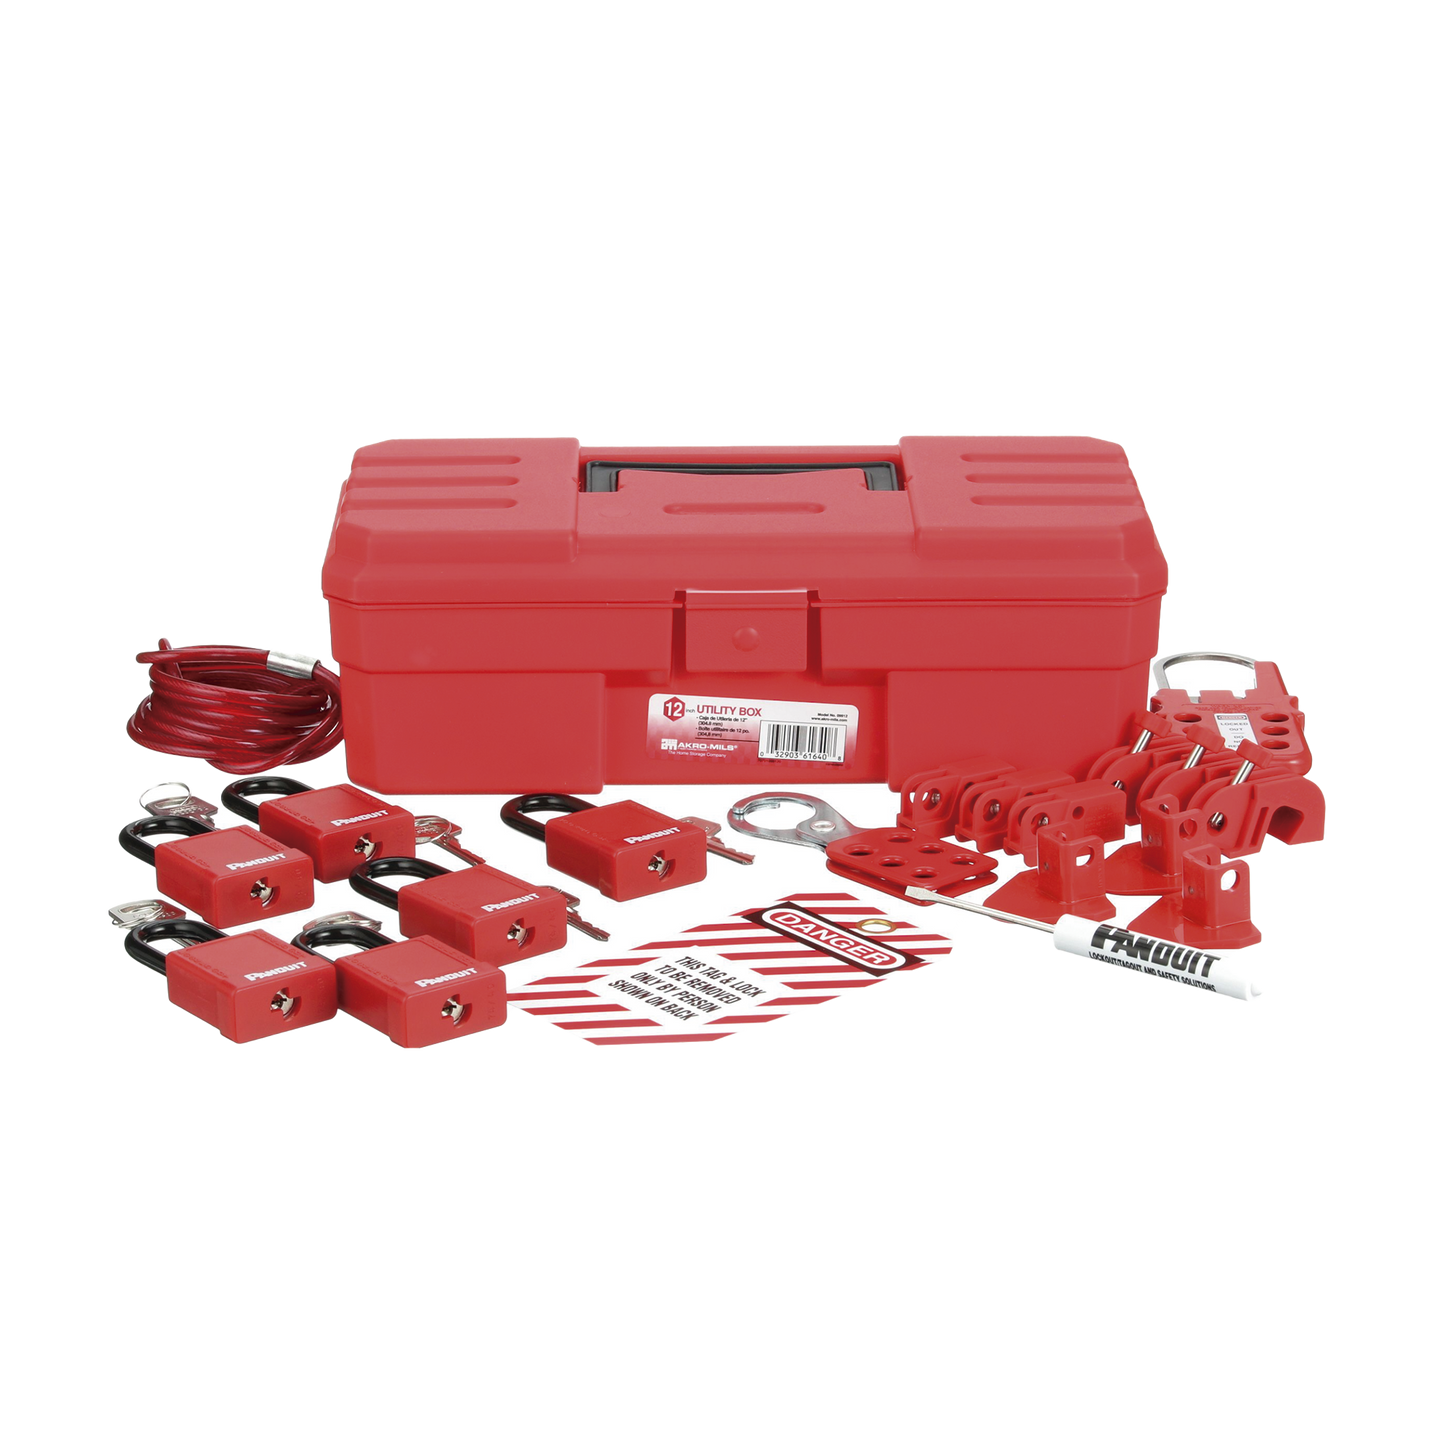 Kit de Bloqueo LOTO para Contratistas con Componentes (Color Rojo).